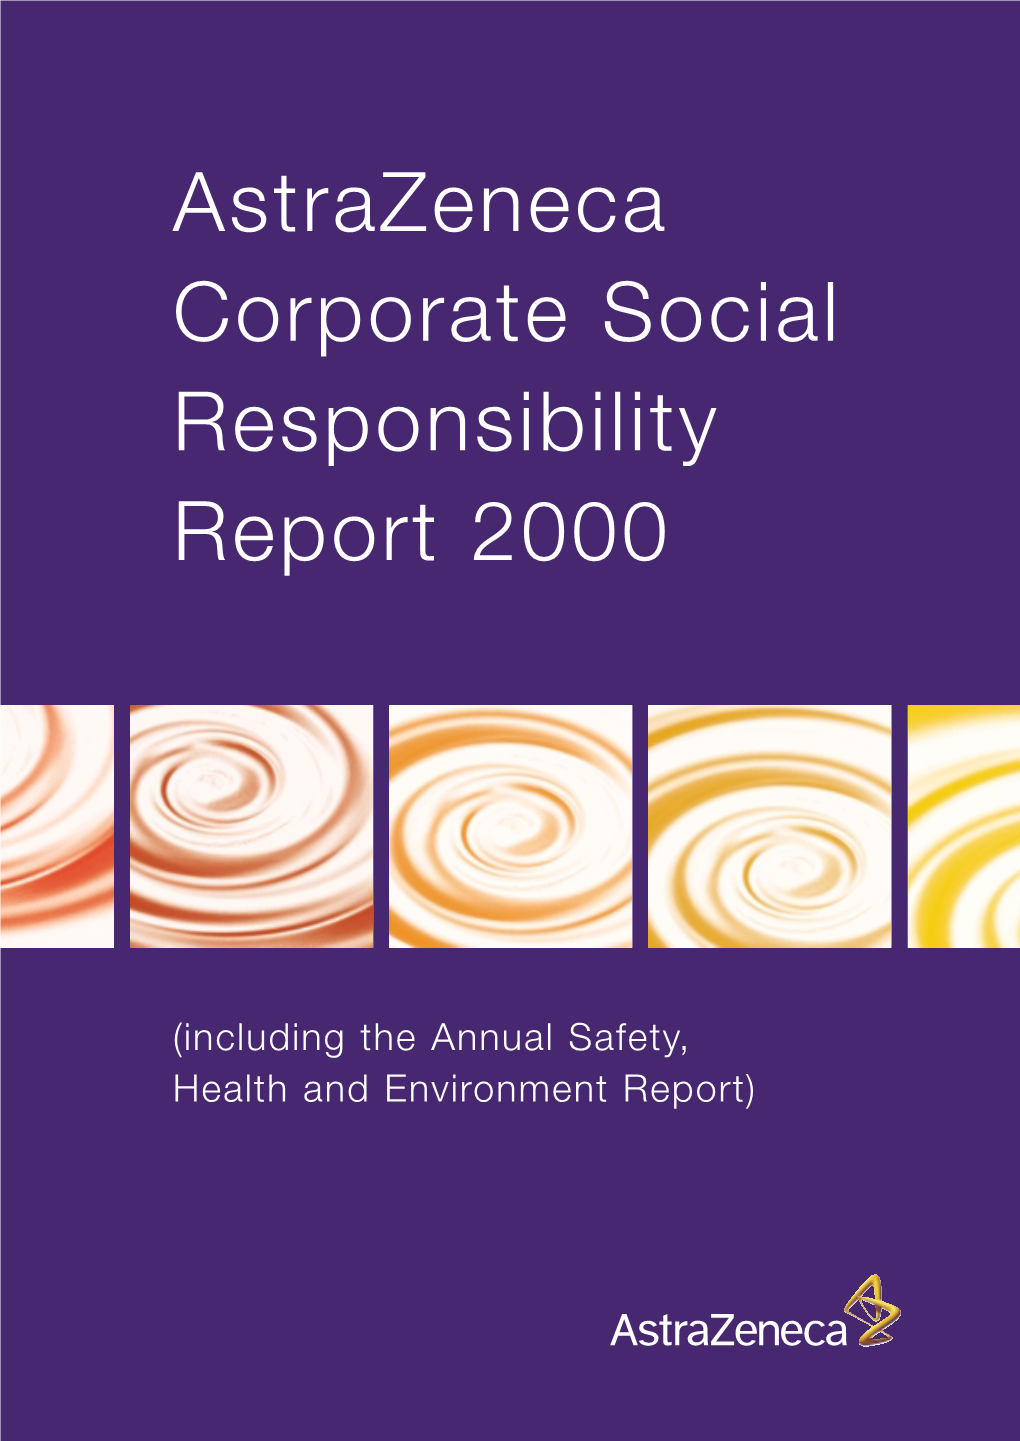 Astrazeneca Corporate Responsibility 2000 Summary Report